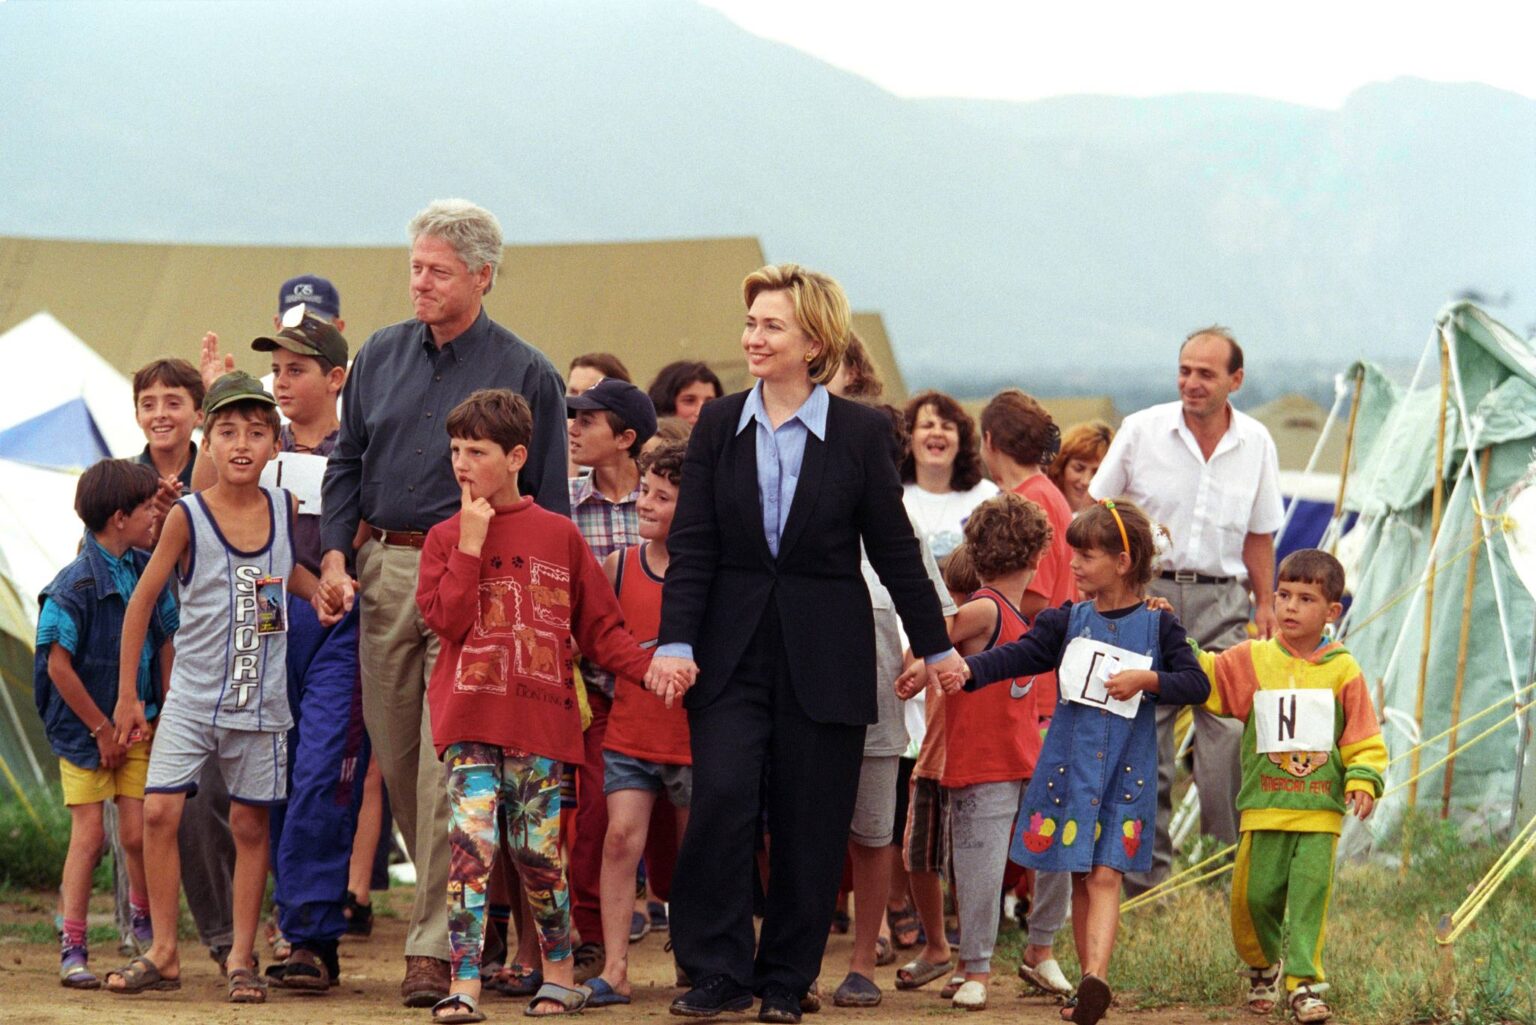 Në Ditën e Refugjatëve, Clinton publikon fotografi nga vizita që u bëri refugjatëve nga Kosova më 1999